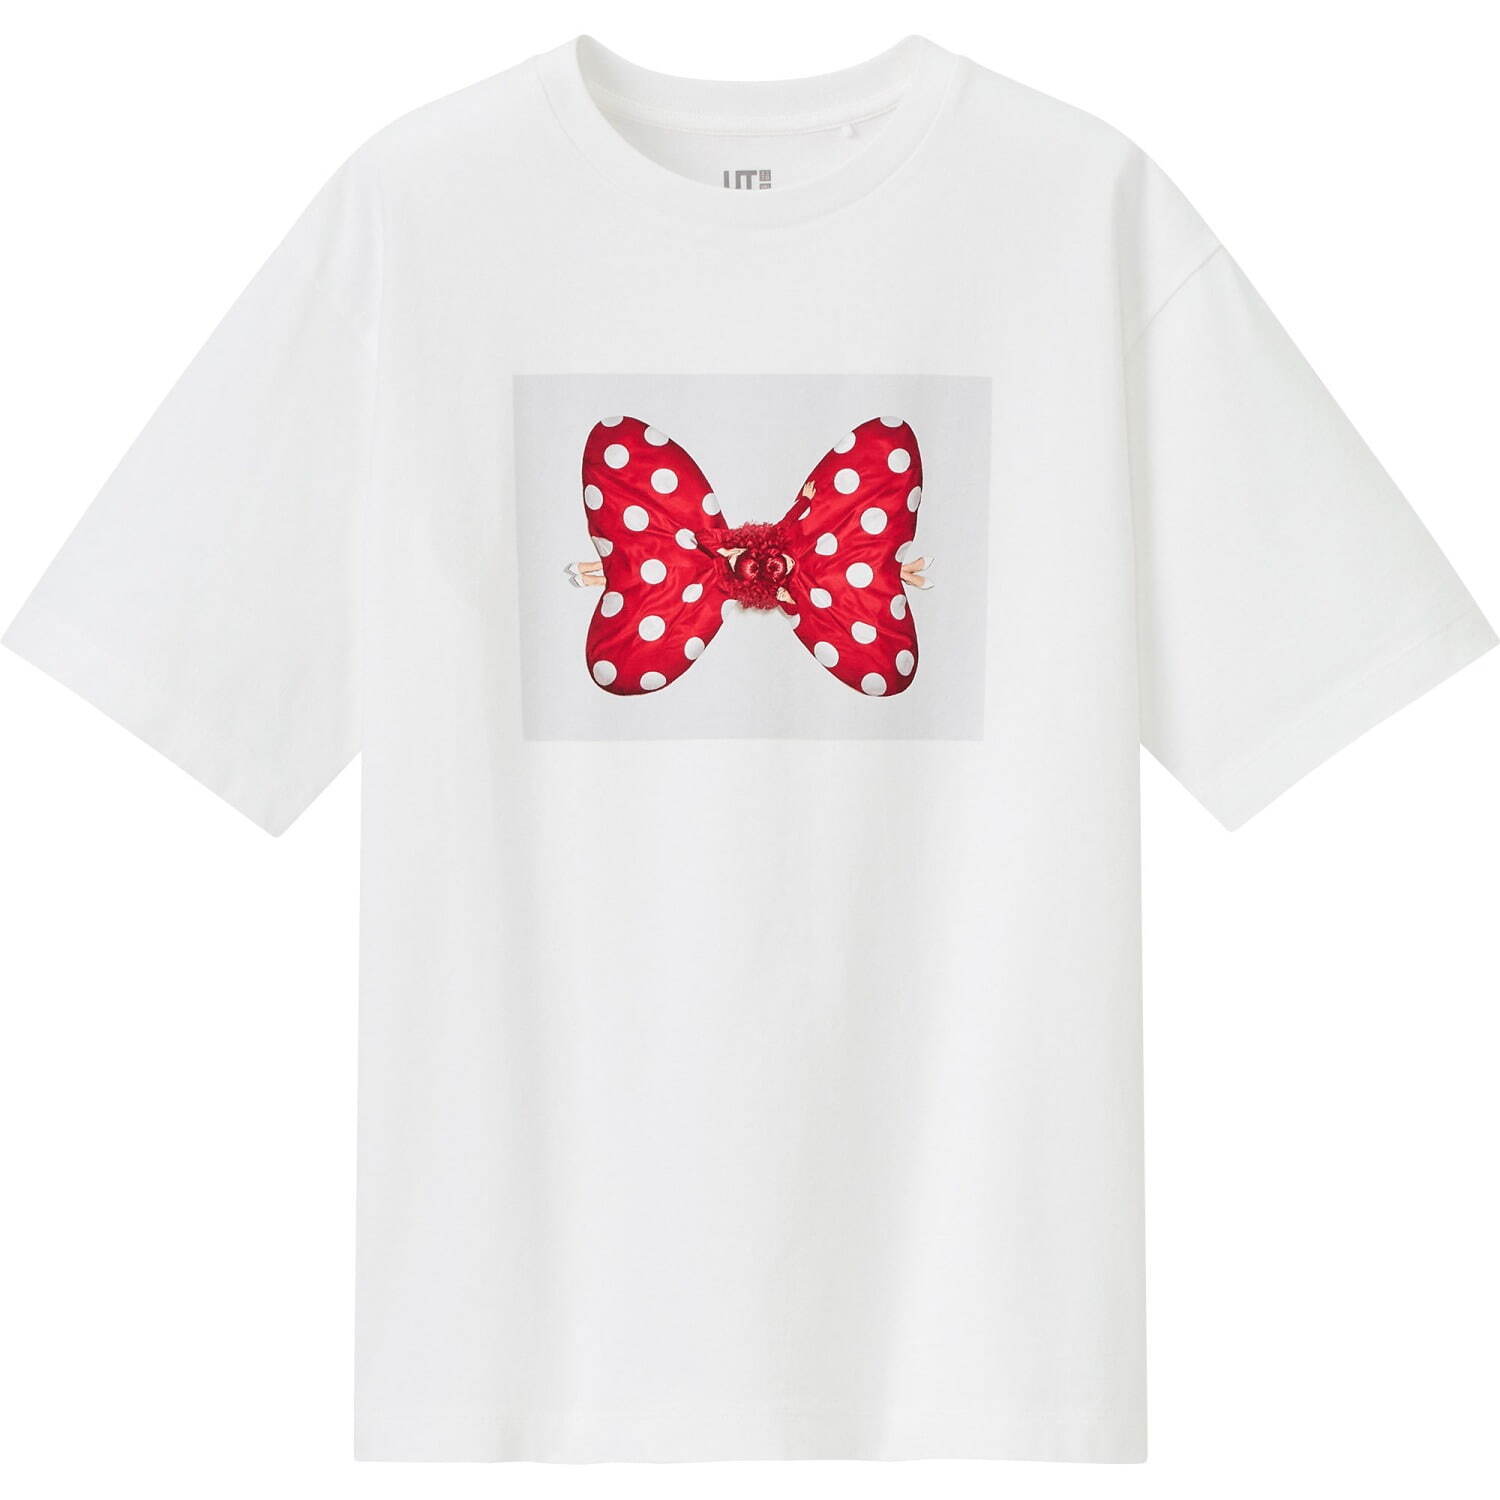 ユニクロ Ut ディズニー ミッキーマウス ミニーマウスを吉田ユニが表現 水玉リボンtシャツなど ファッションプレス